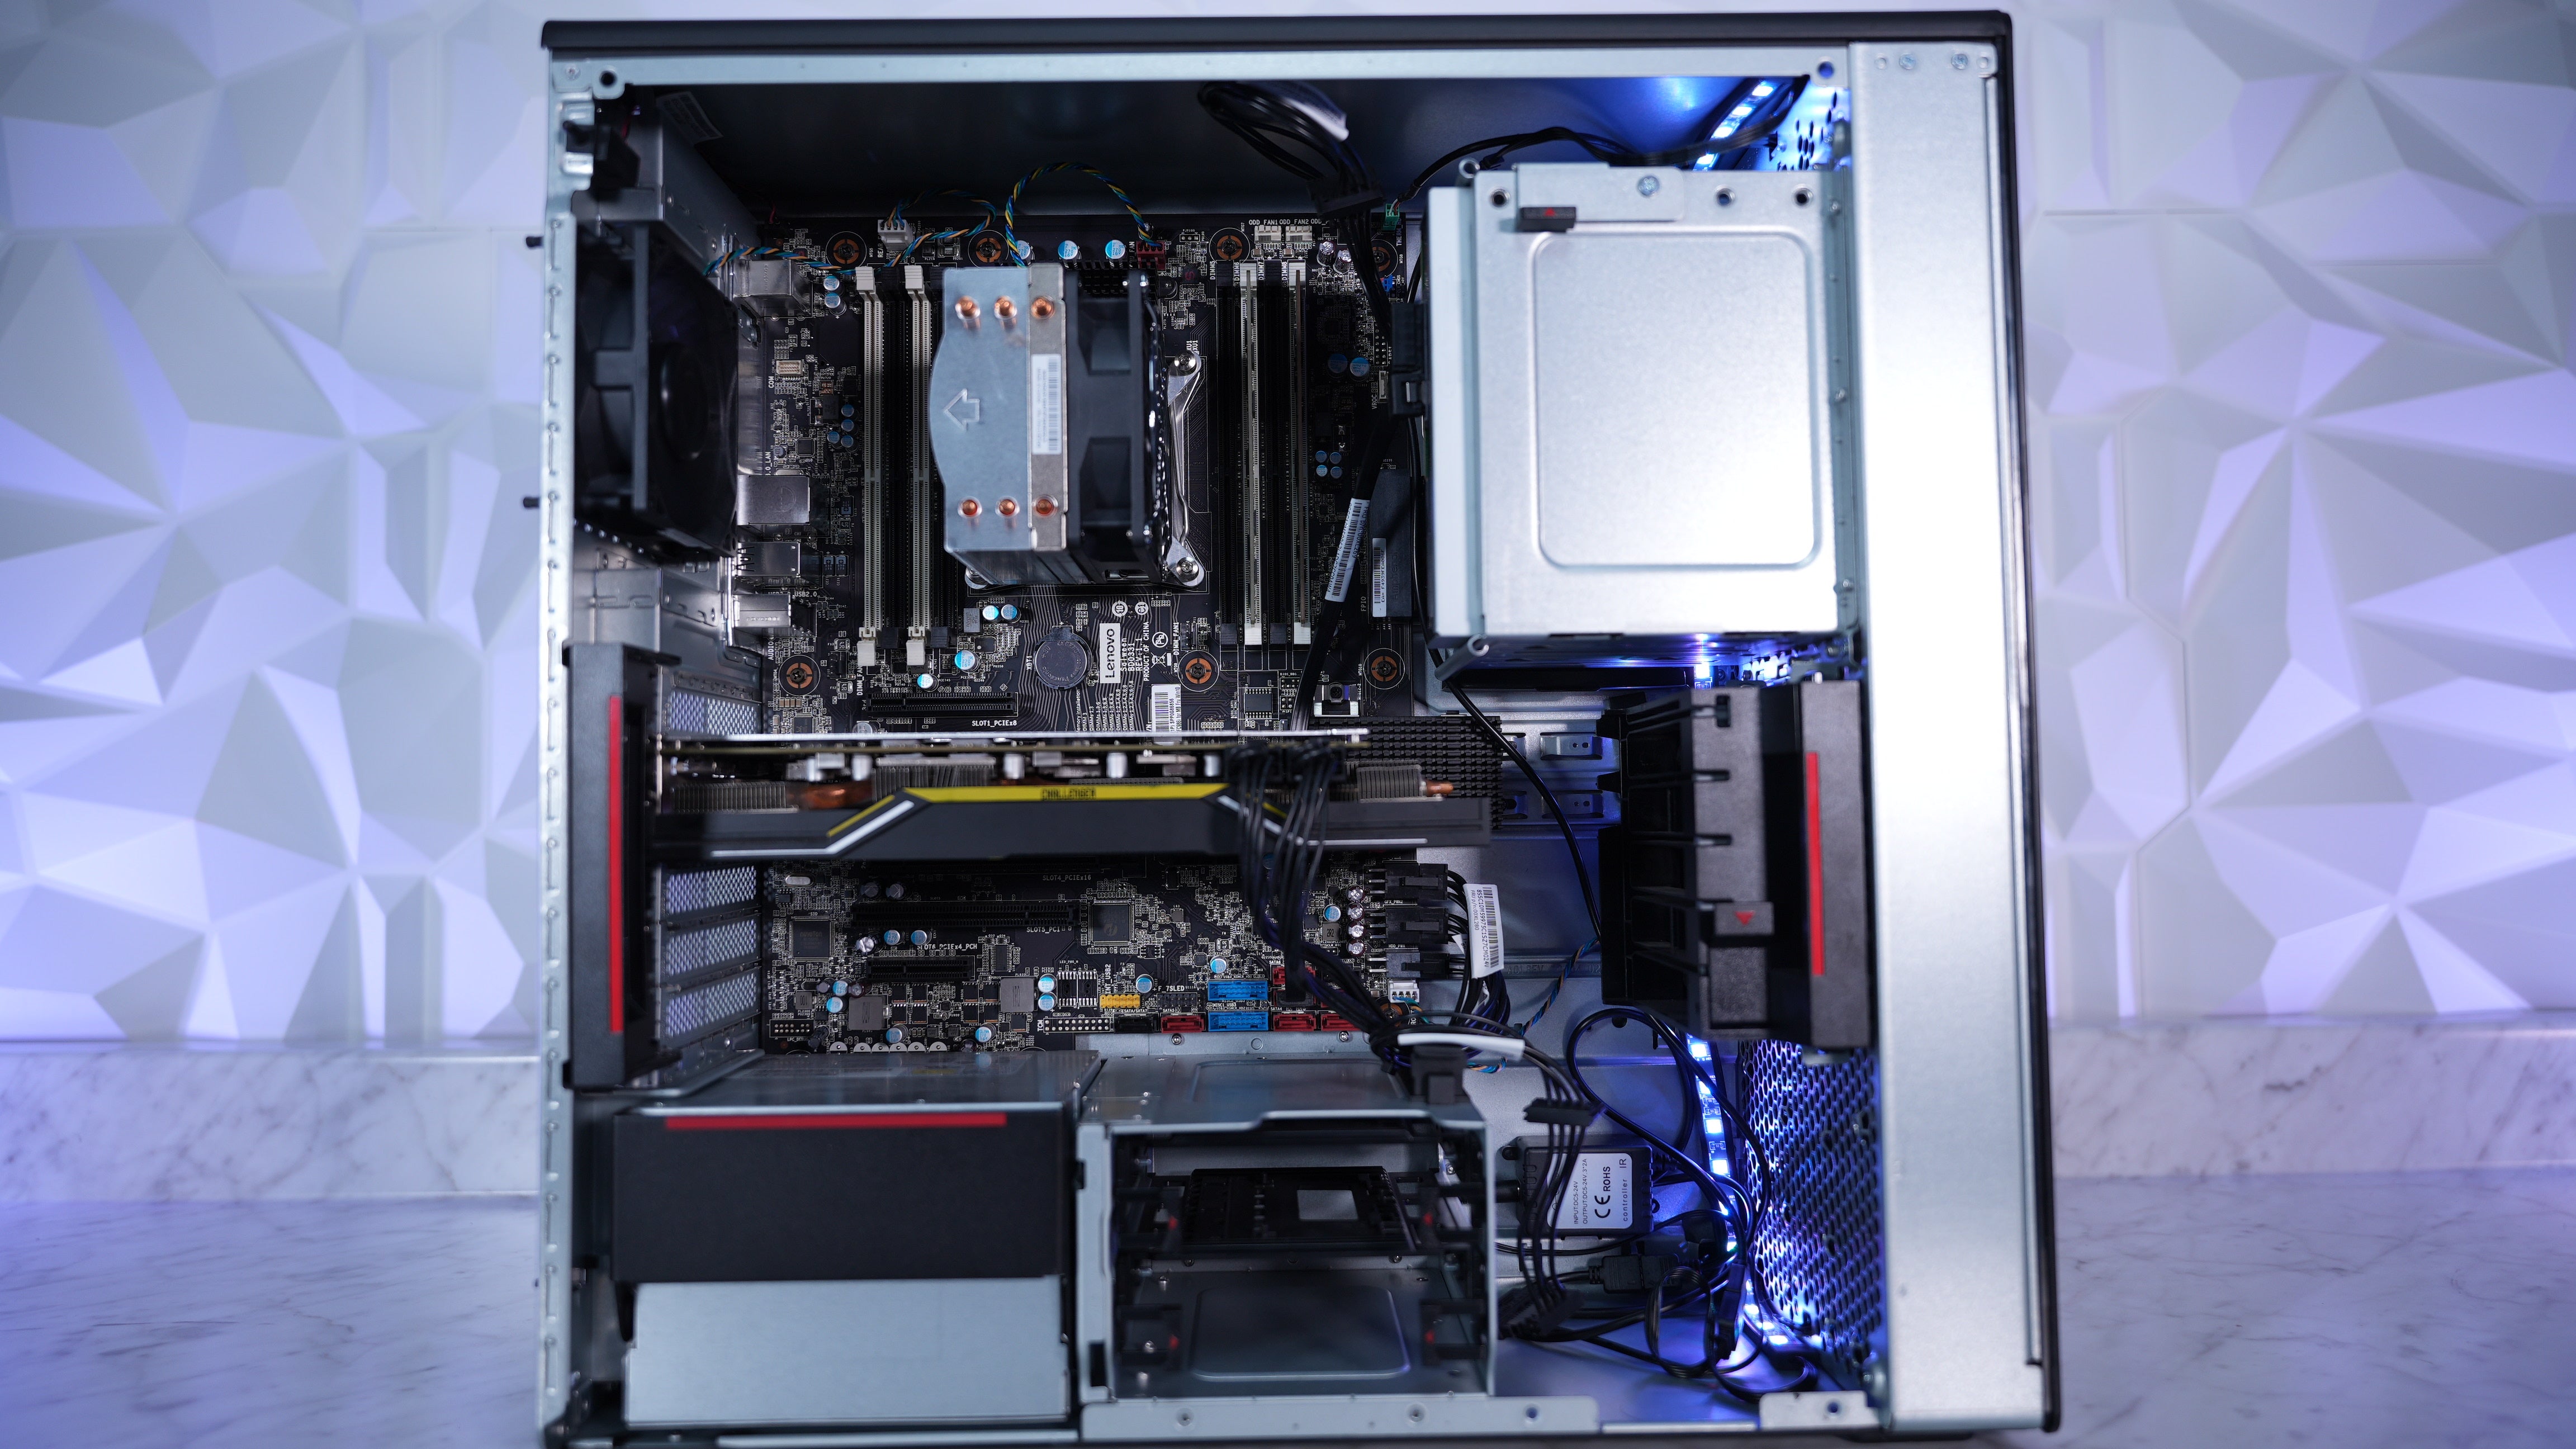 Intel Xeon W 2135 + RX 5700 Gaming PC (In Stock)